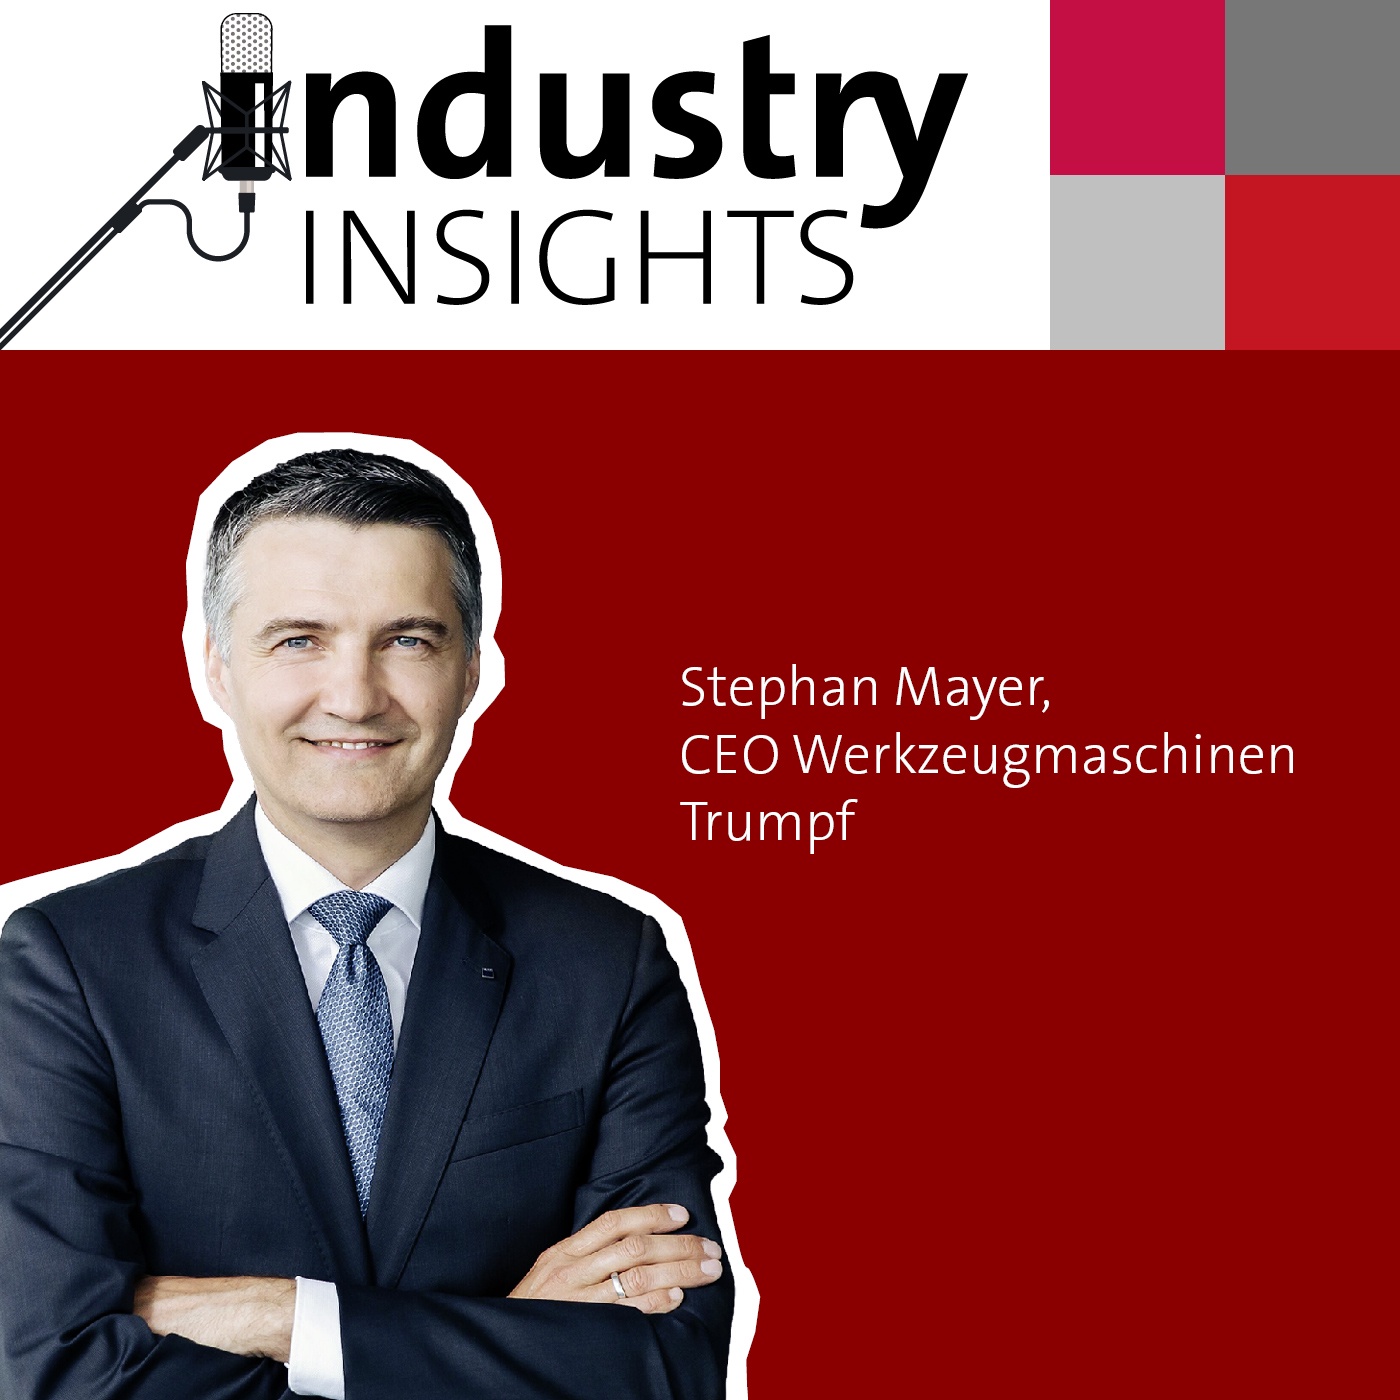 Trumpf CEO Werkzeugmaschinen Stephan Mayer über die Blechbearbeitung, Kundenlösungen und China